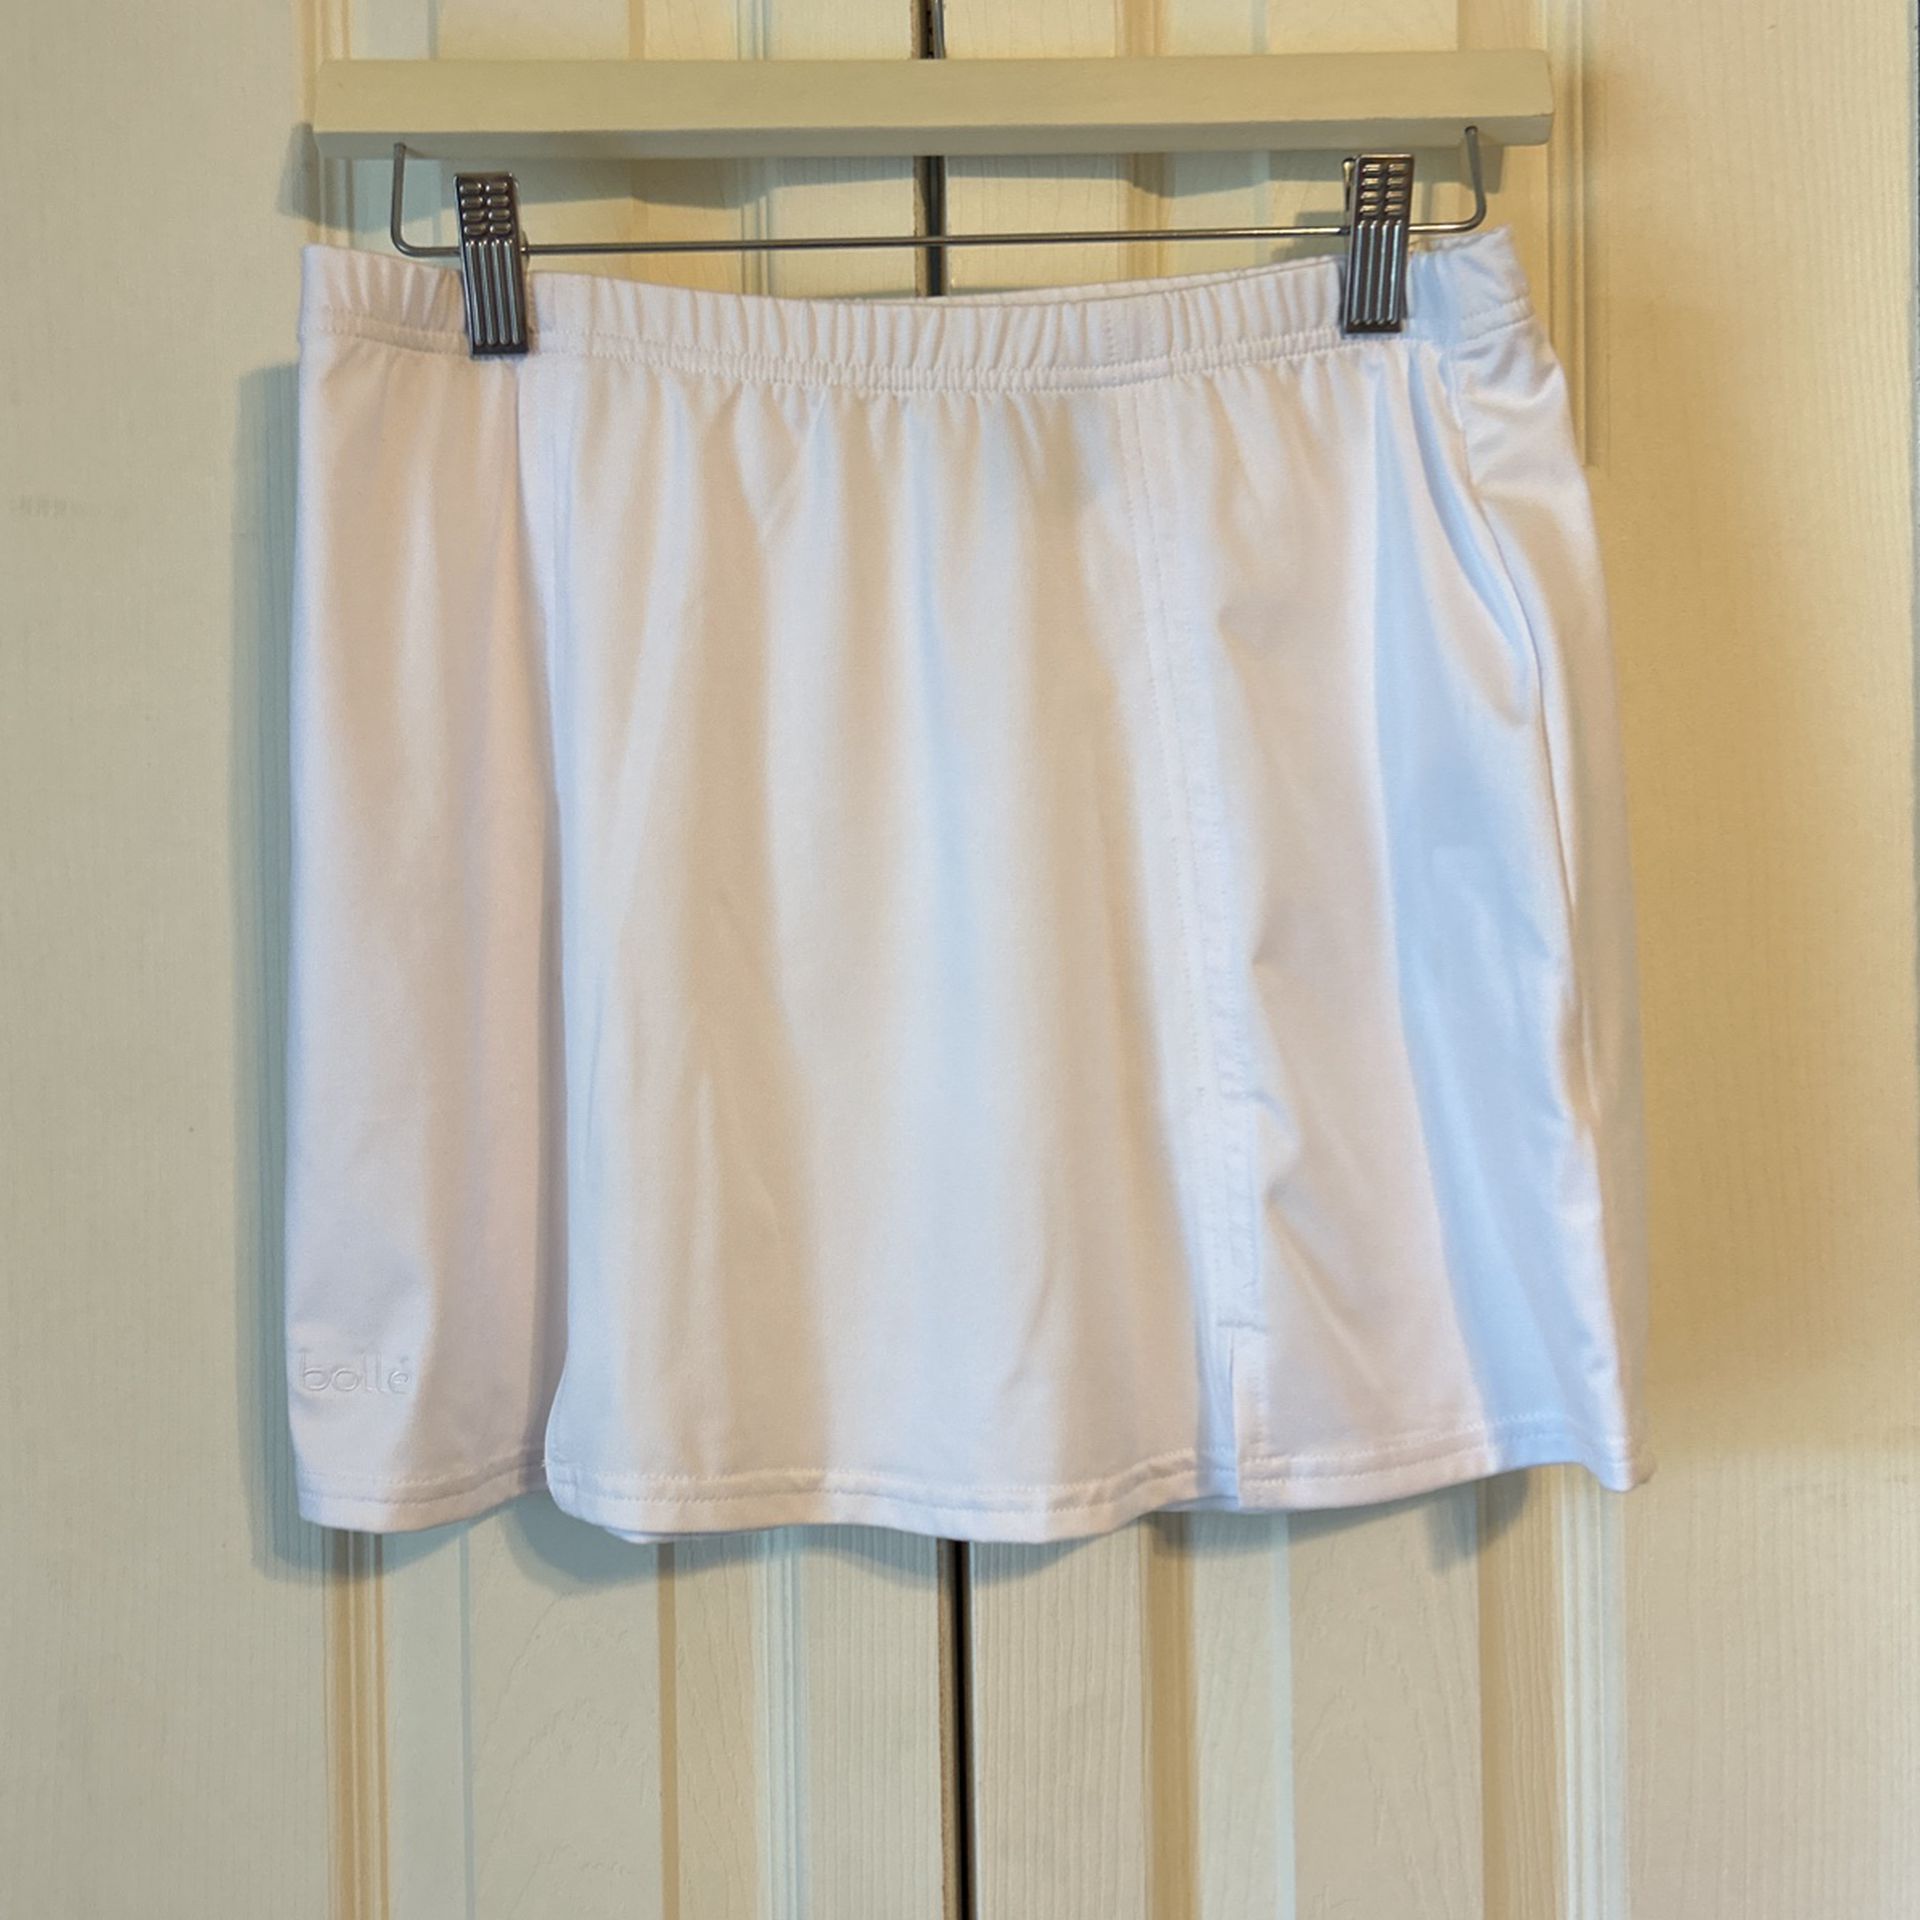 Bolle White Tennis Skirt